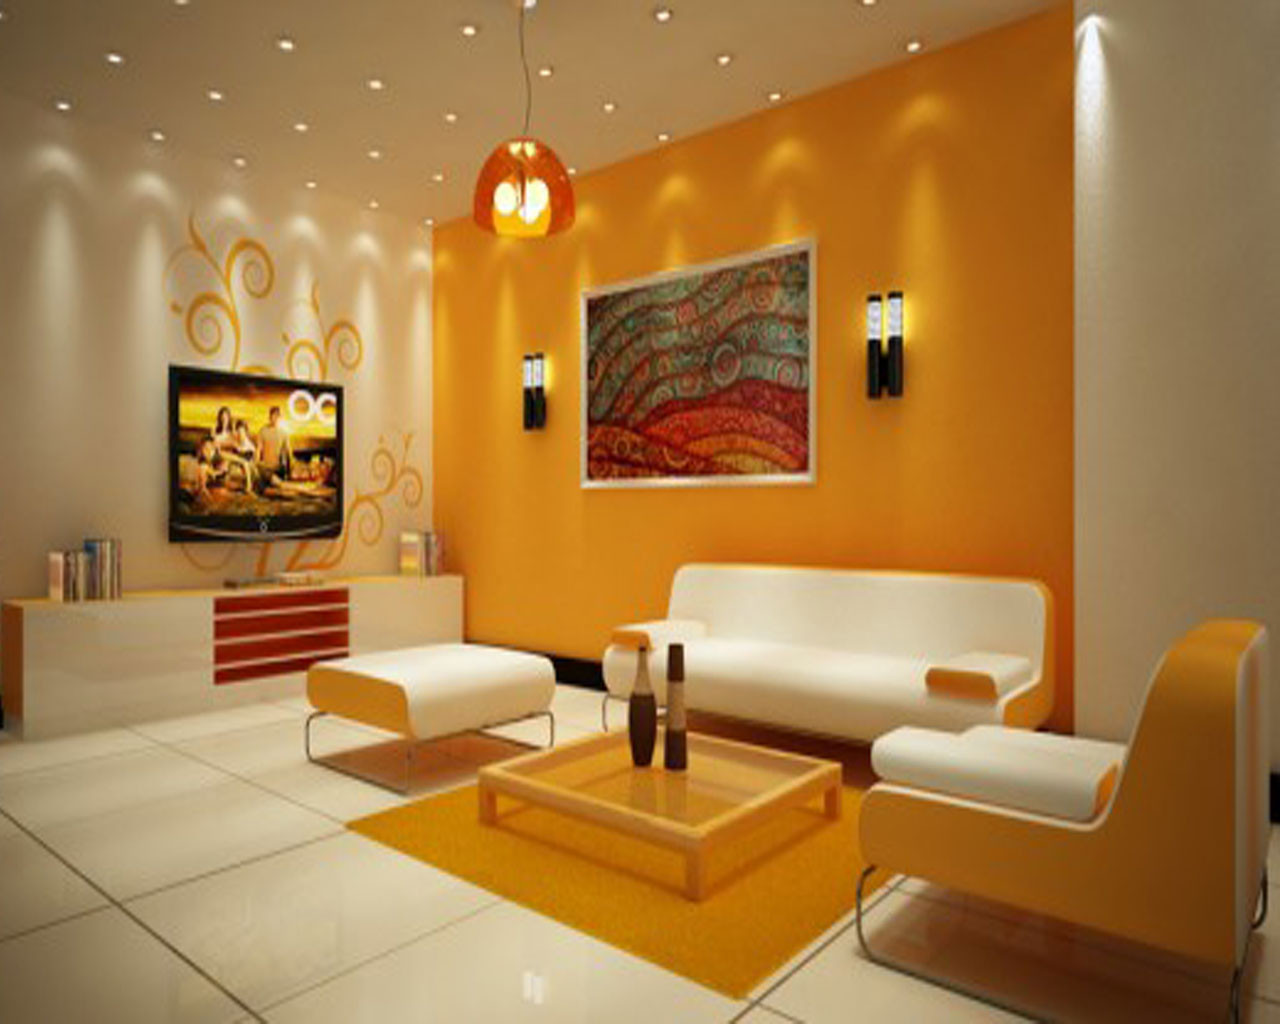 Farbgestaltung Wohnzimmer
 Gelbe Wand 20 Ideen für gelbe Farbgestaltung fresHouse